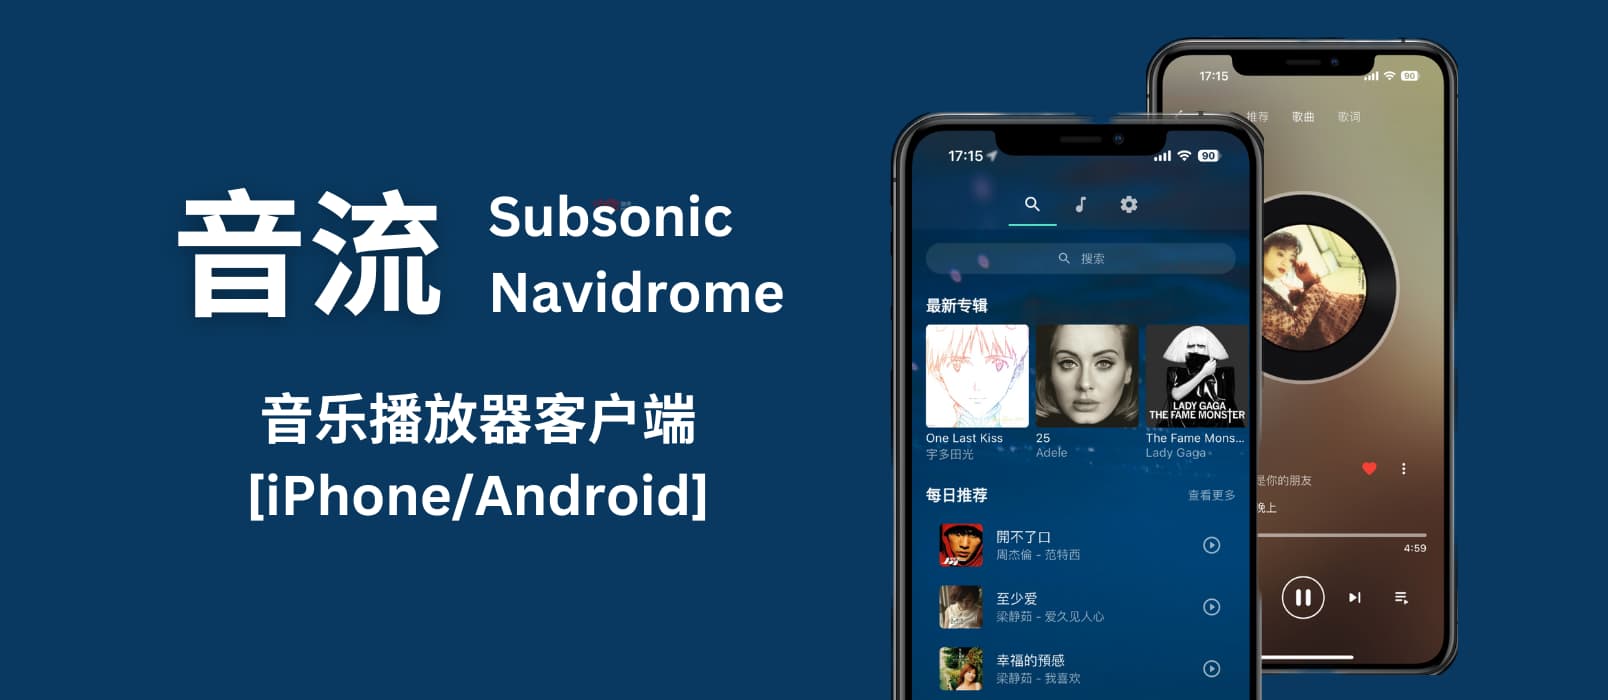 音流 Beta - 支持 Subsonic 和 Navidrome 的音乐播放器[iPhone/Android]